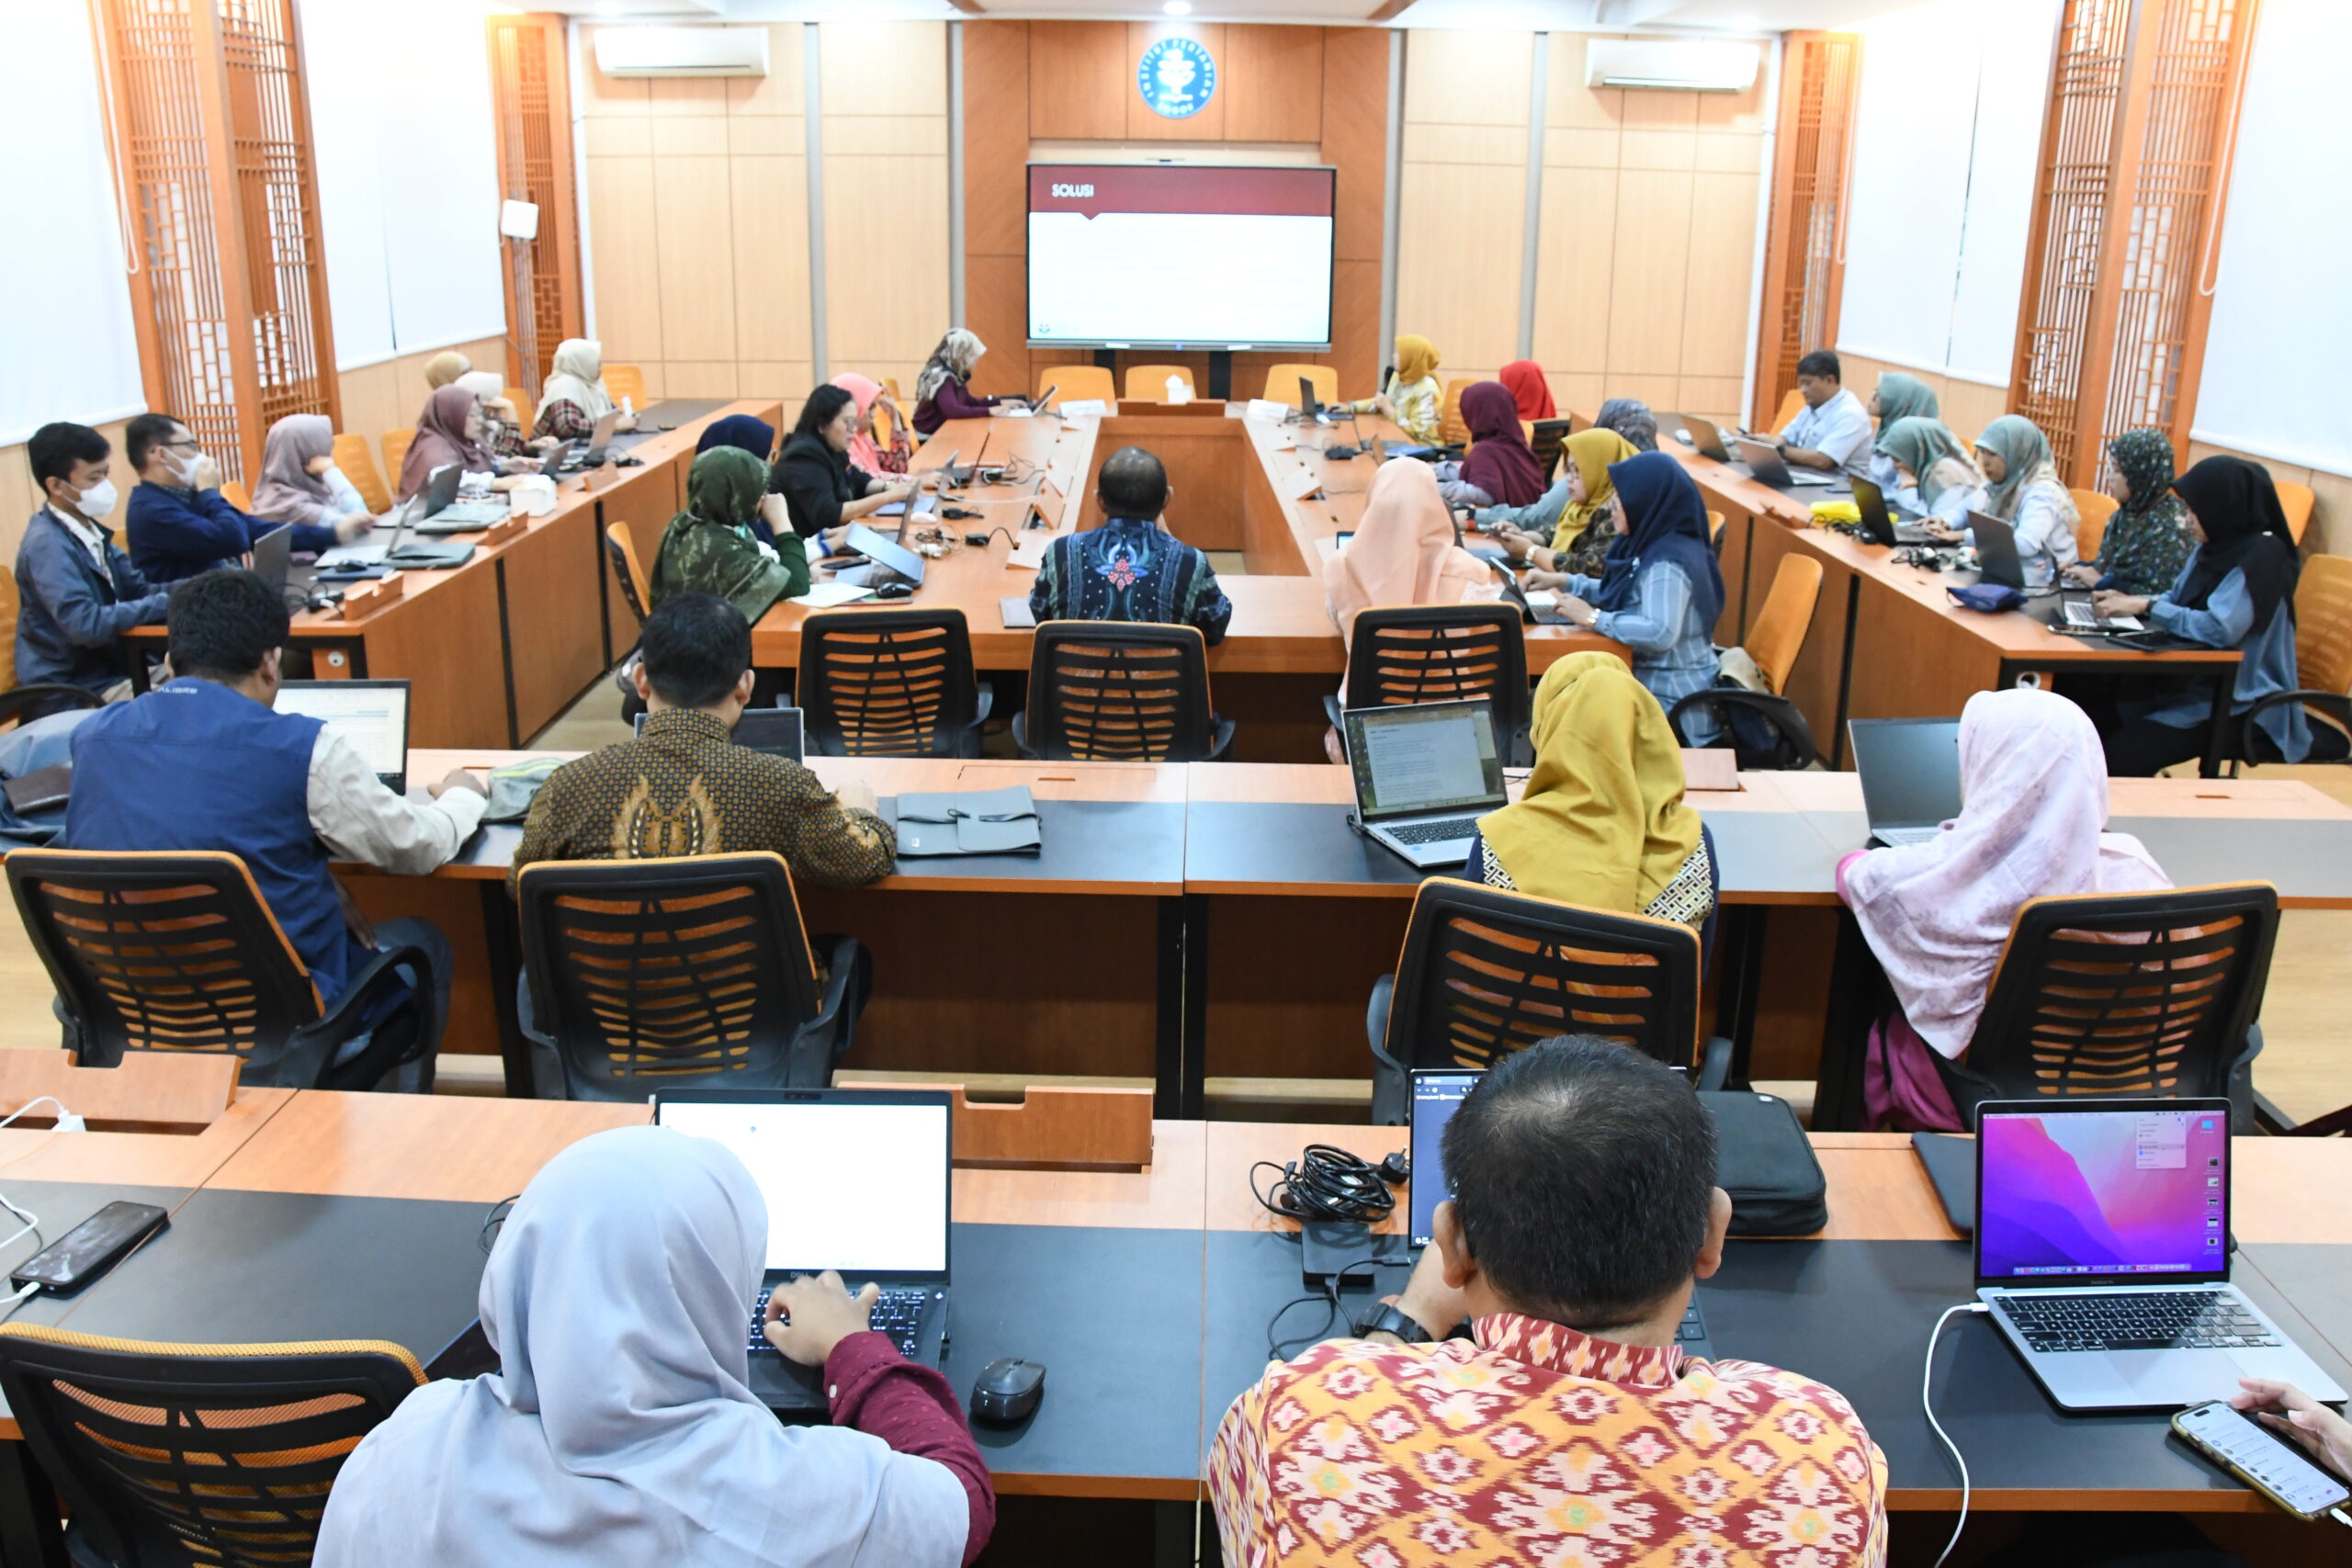 Persiapan Akreditasi Internasional AQAS, FEM IPB University Adakan Workshop